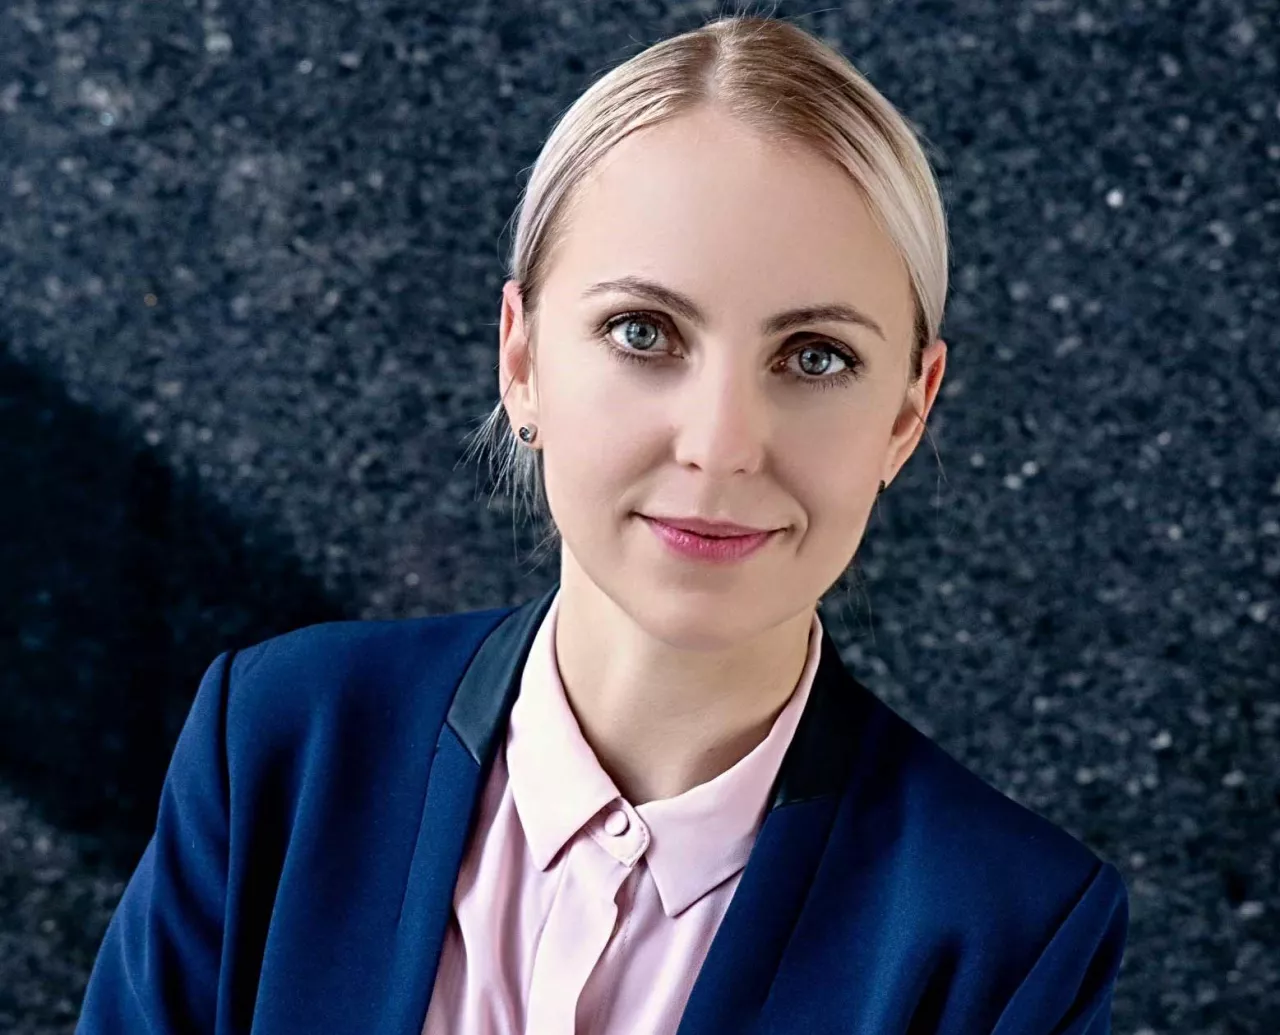 Monika Duda, dyrektor zarządzająca DHL Supply Chain Polska (fot. materiały prasowe)